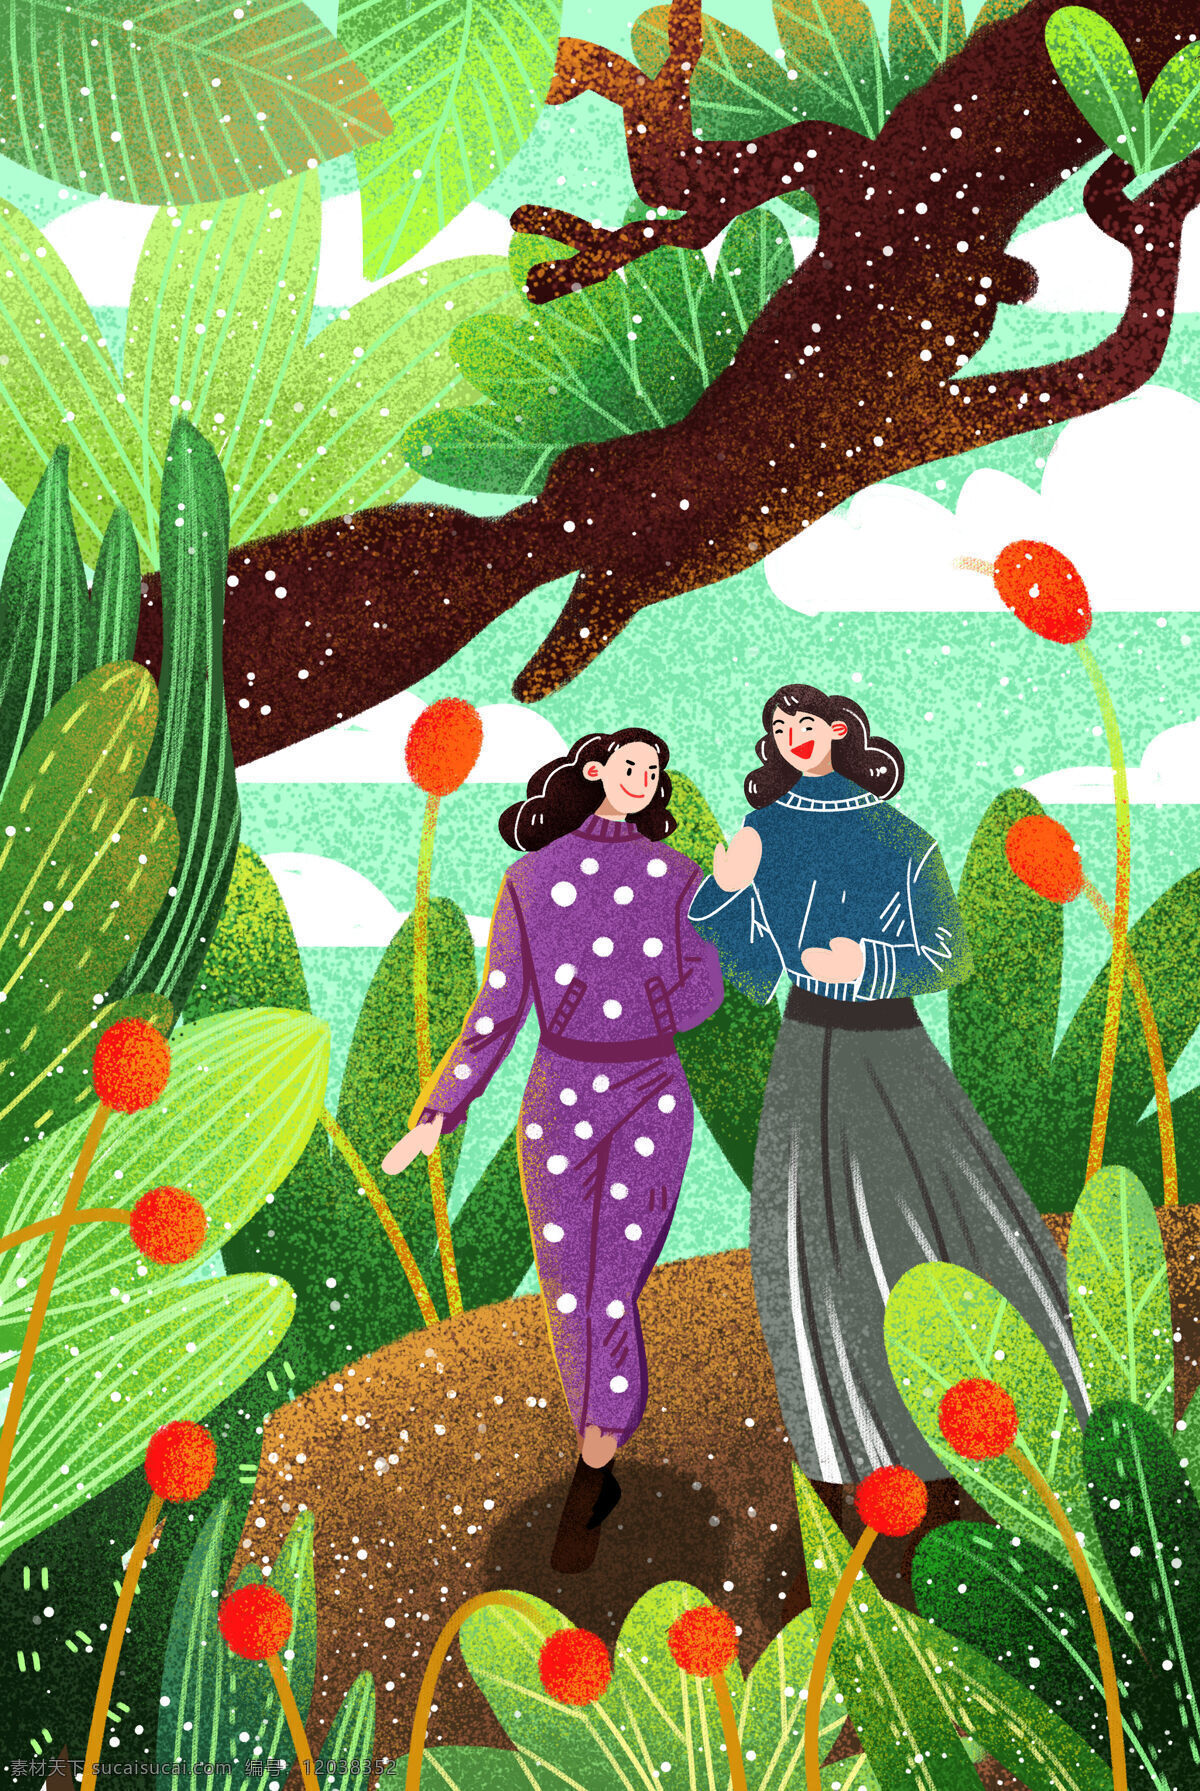 卡通 两个 女孩 树丛 中 行走 背景 底部植物 绿叶 花草 植物 夏天 扁平 手绘 插画 春天 树叶 清新 美女